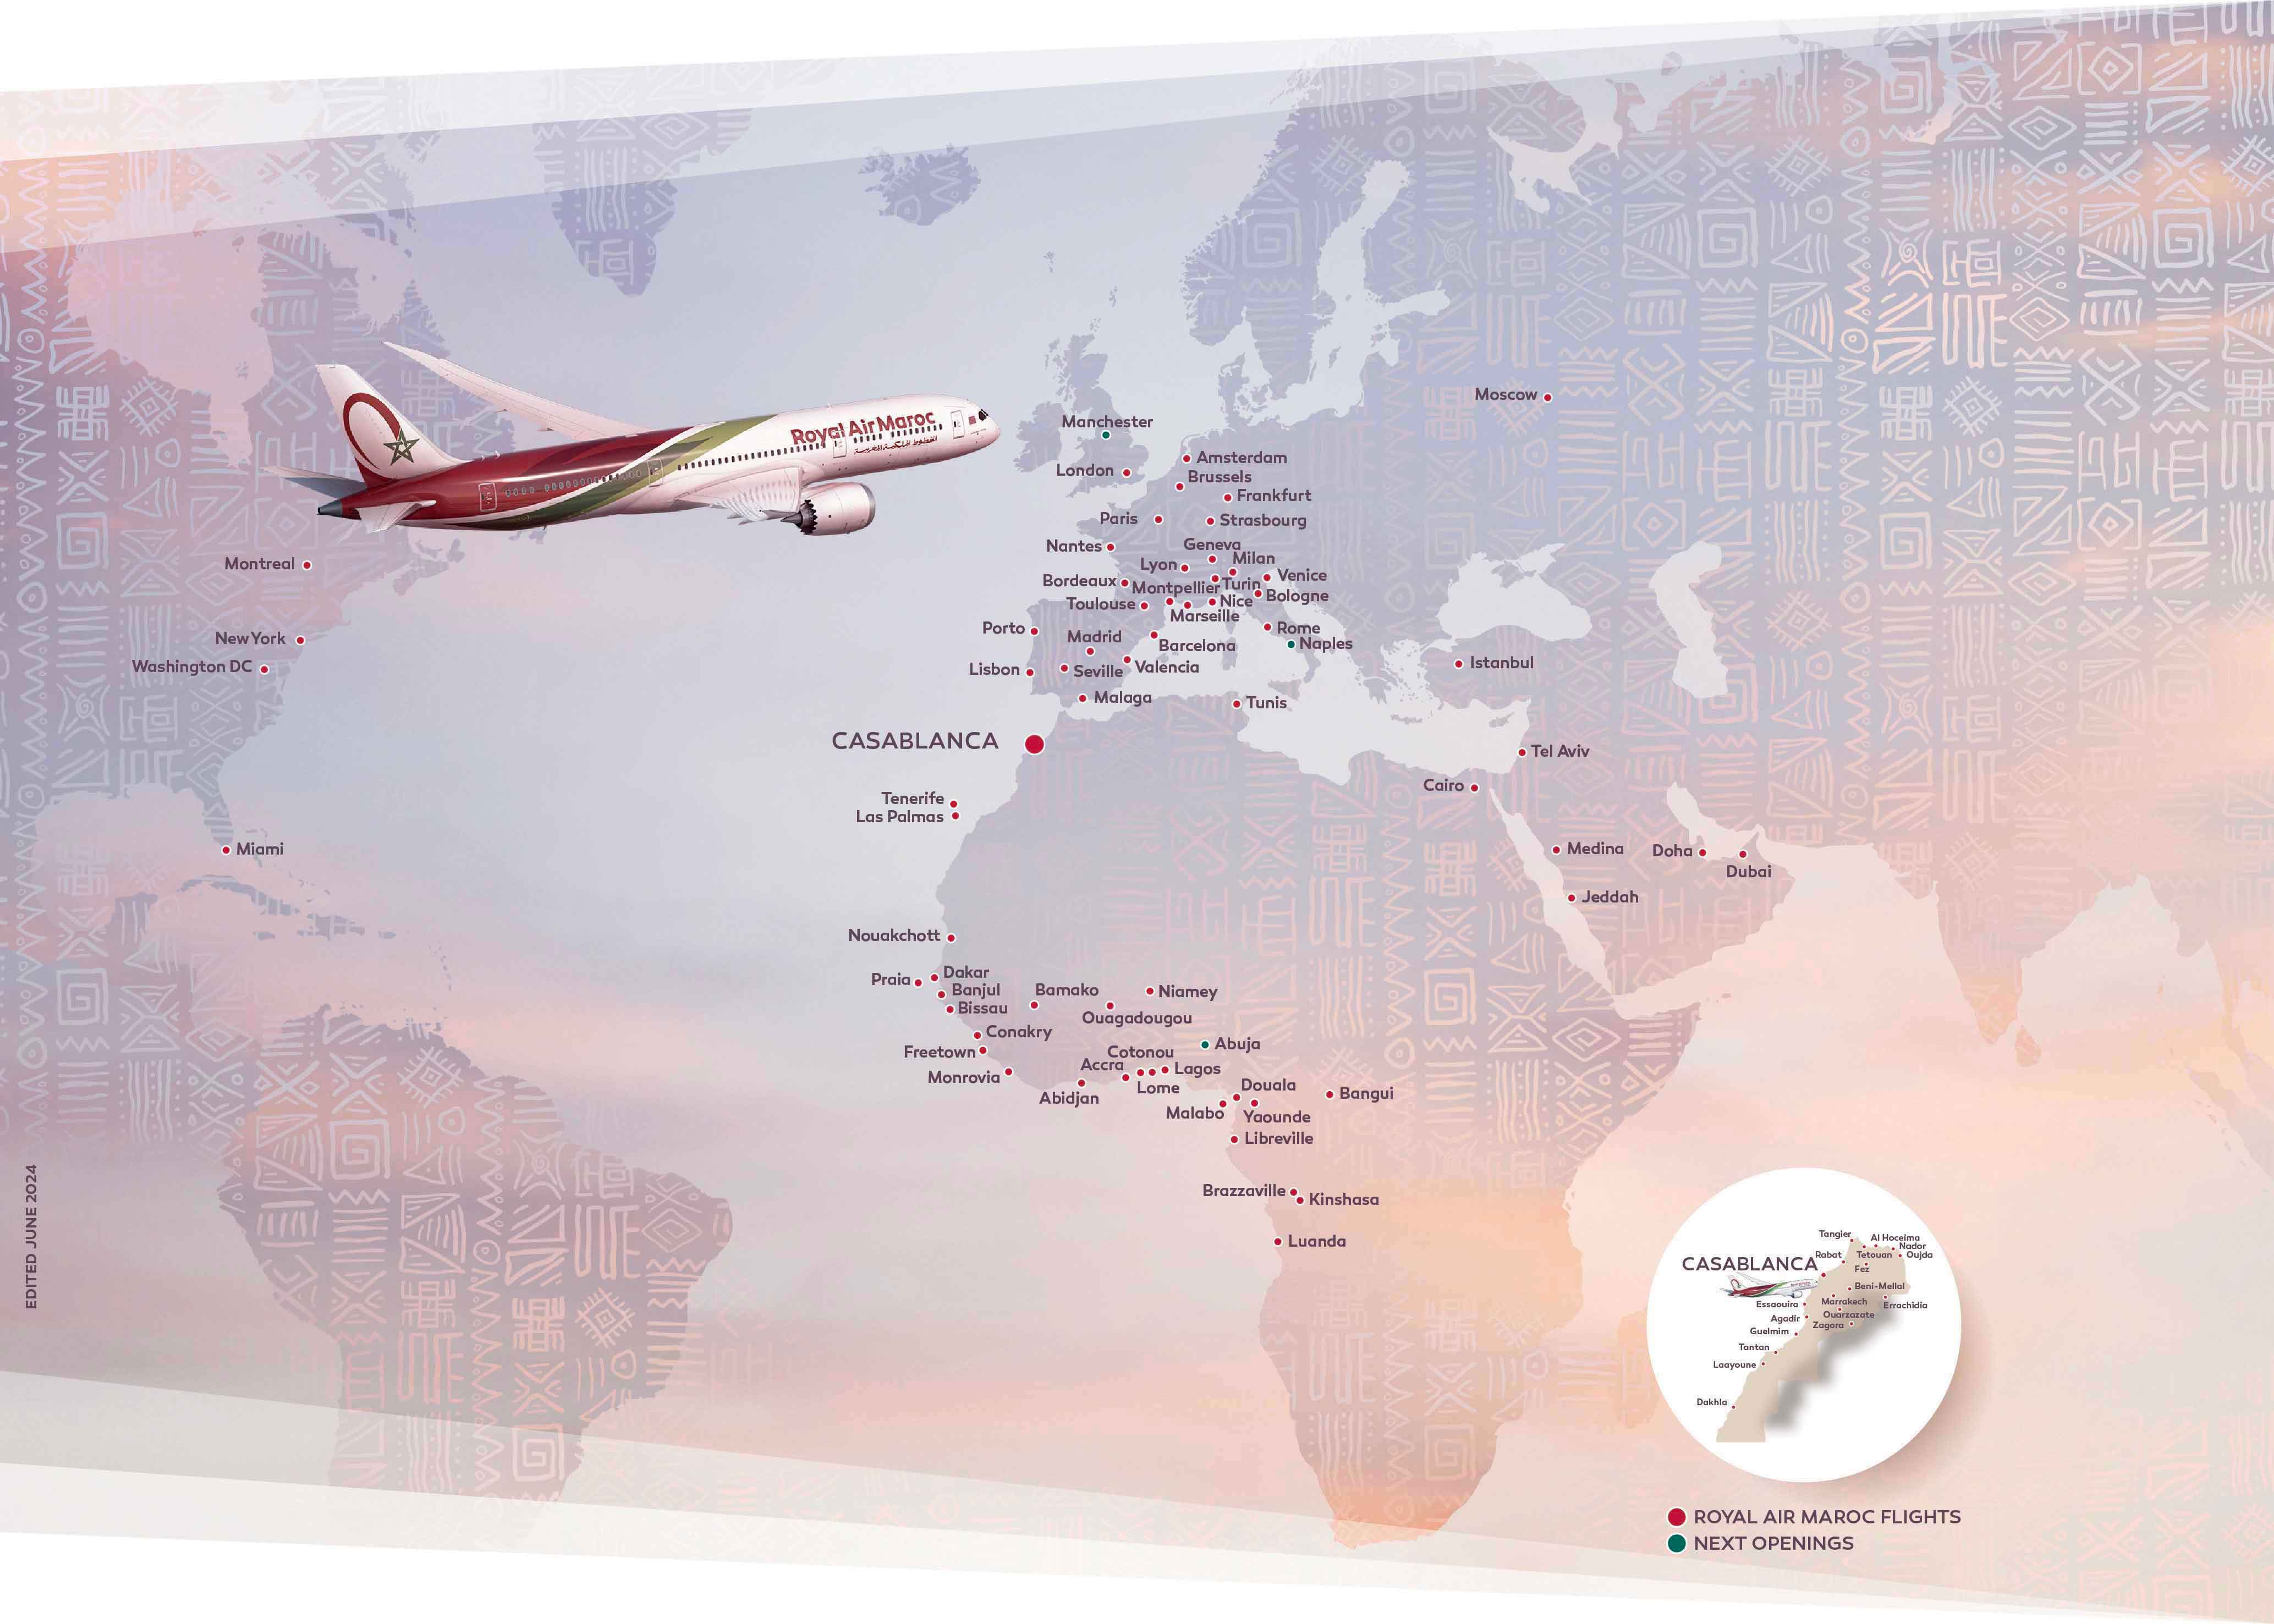 Mapa de la red Royal Air Maroc. Royal Air Maroc tiene vuelos desde Casablanca a los siguientes destinos: Montreal, Nueva York, Washington, Miami, Sao Paulo, Río de Janeiro, Europa y África